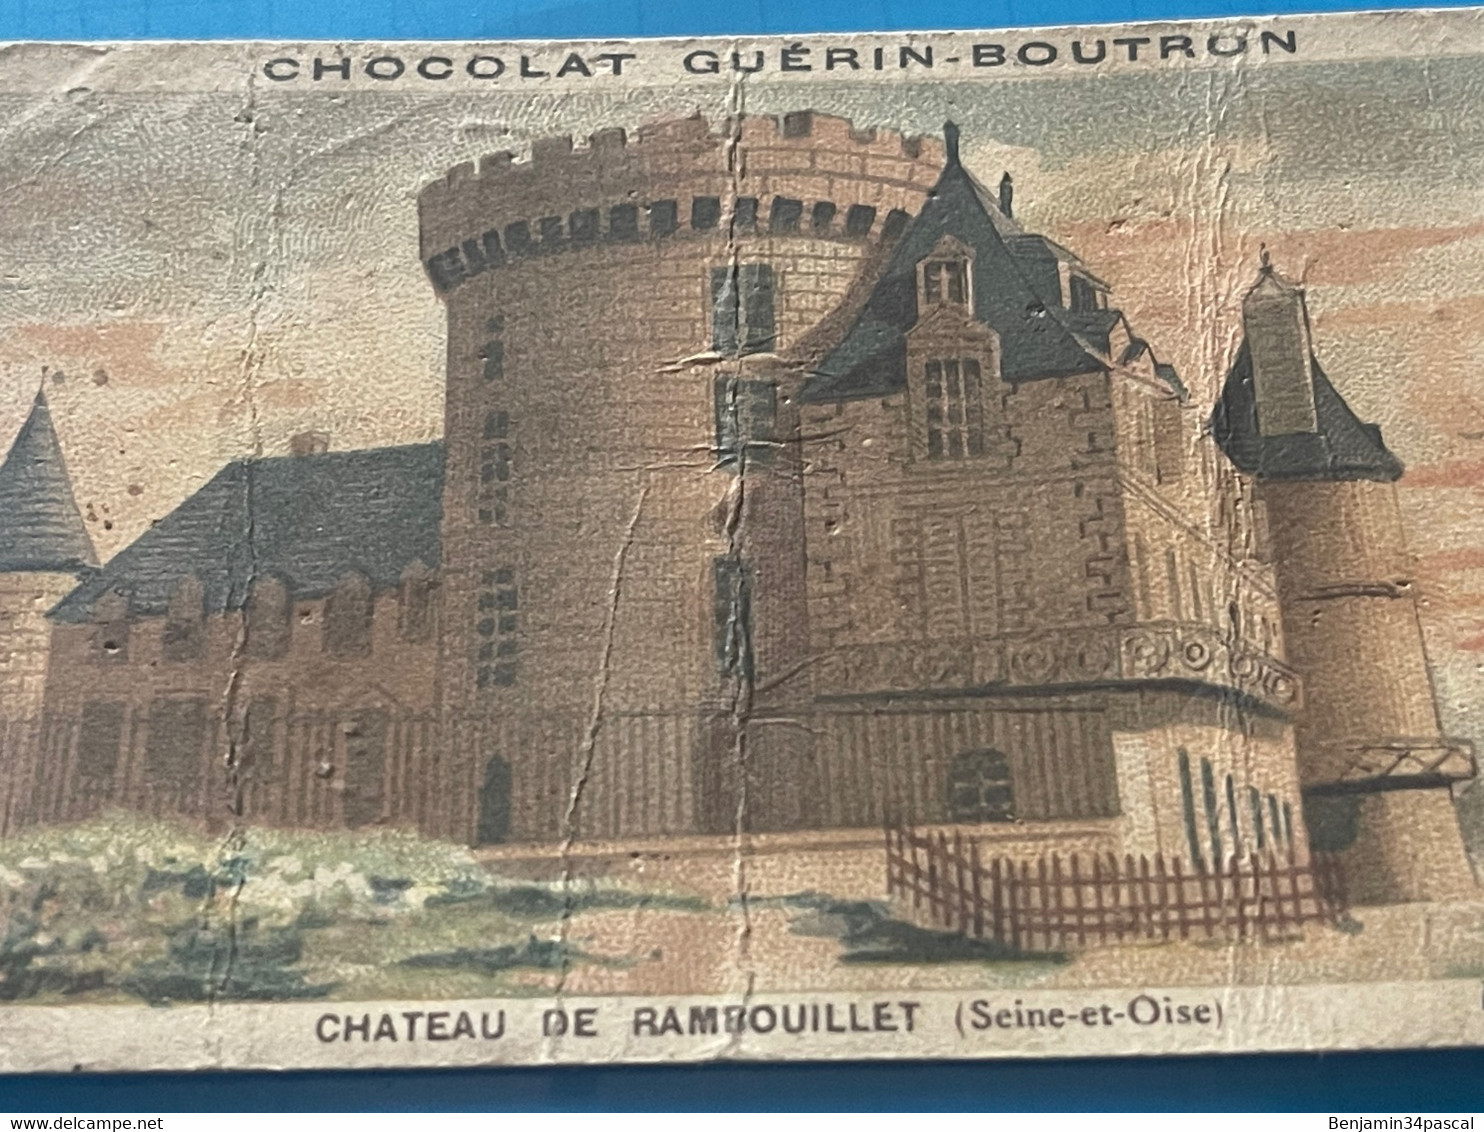 Chocolat GUÉRIN-BOUTRON Image -Chromo Ancienne - Château De Rambouillet ( Seine Et Oise ) - Chocolat